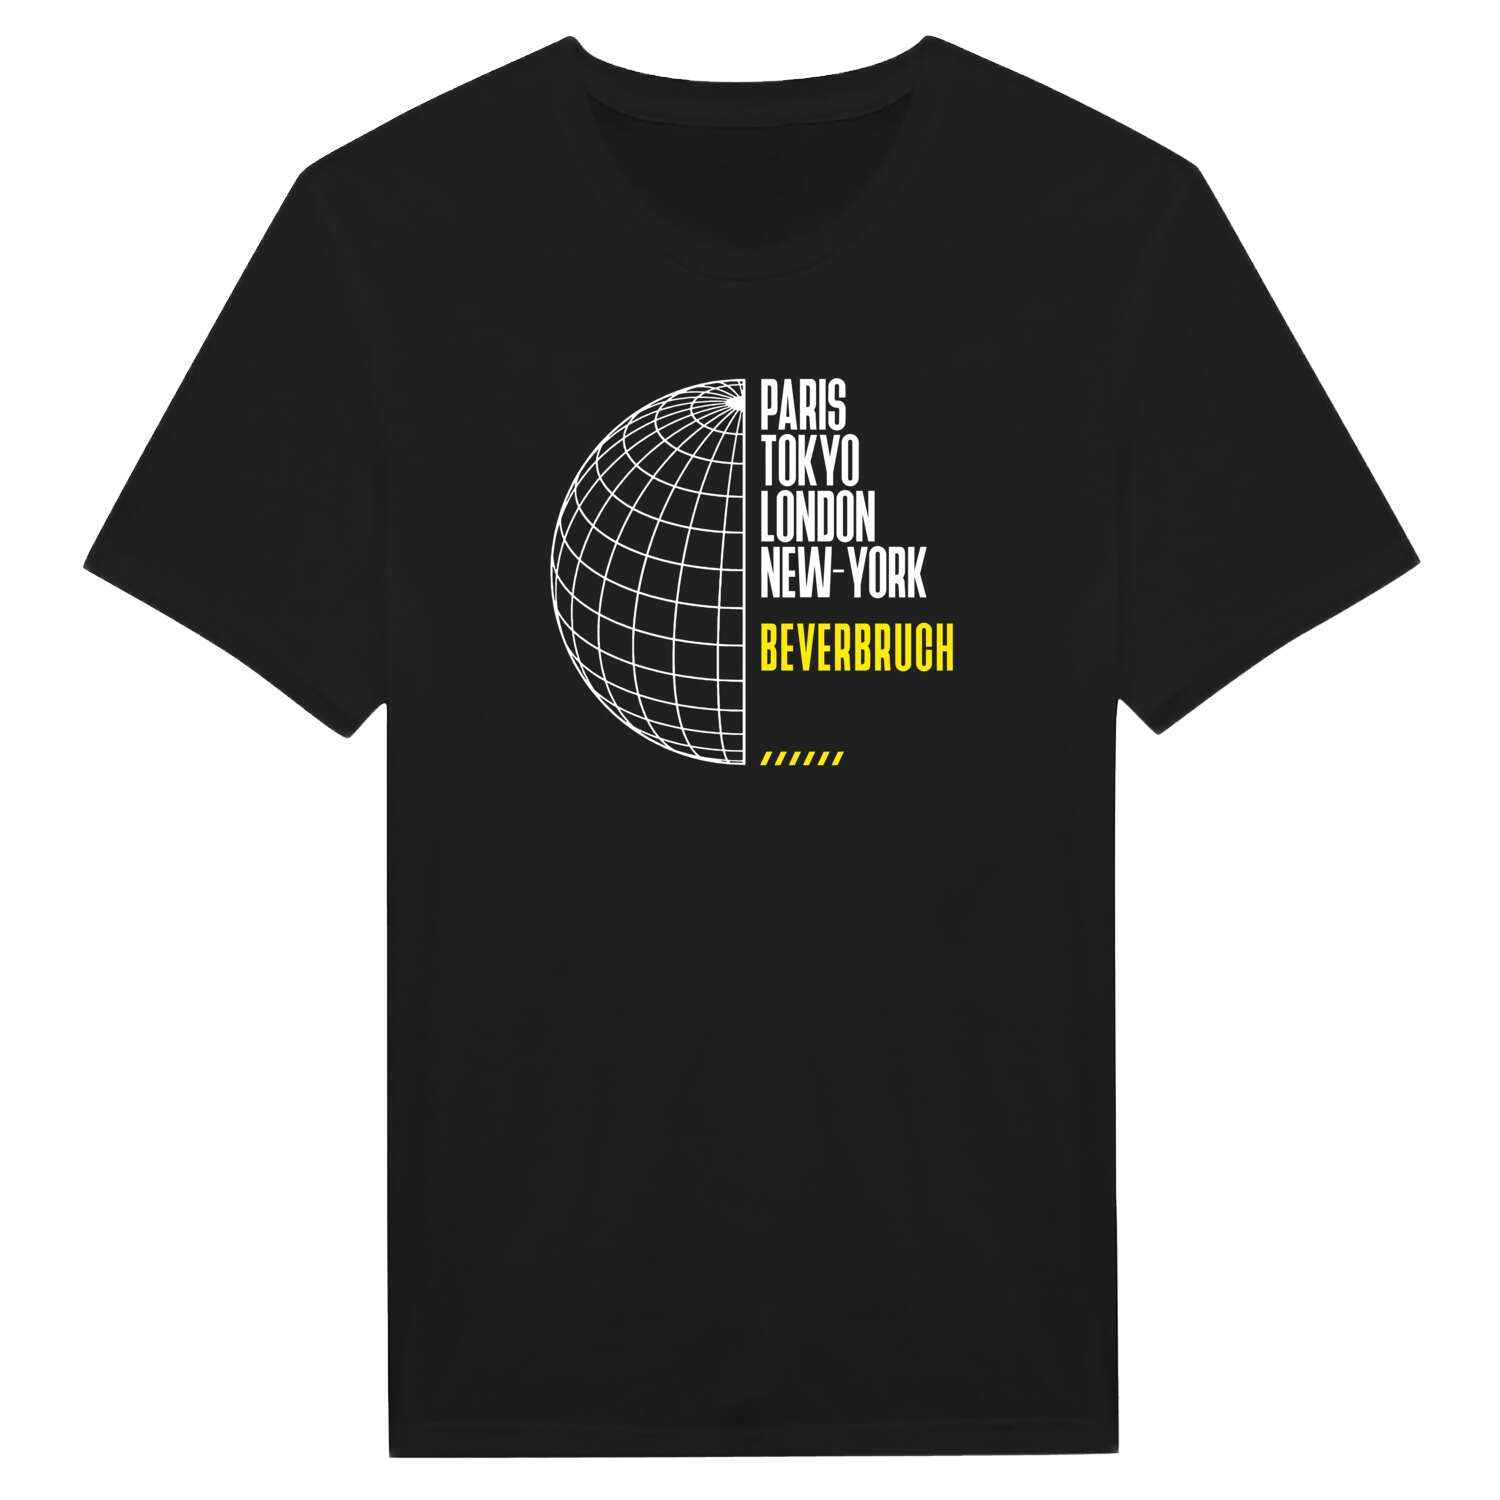 Beverbruch T-Shirt »Paris Tokyo London«